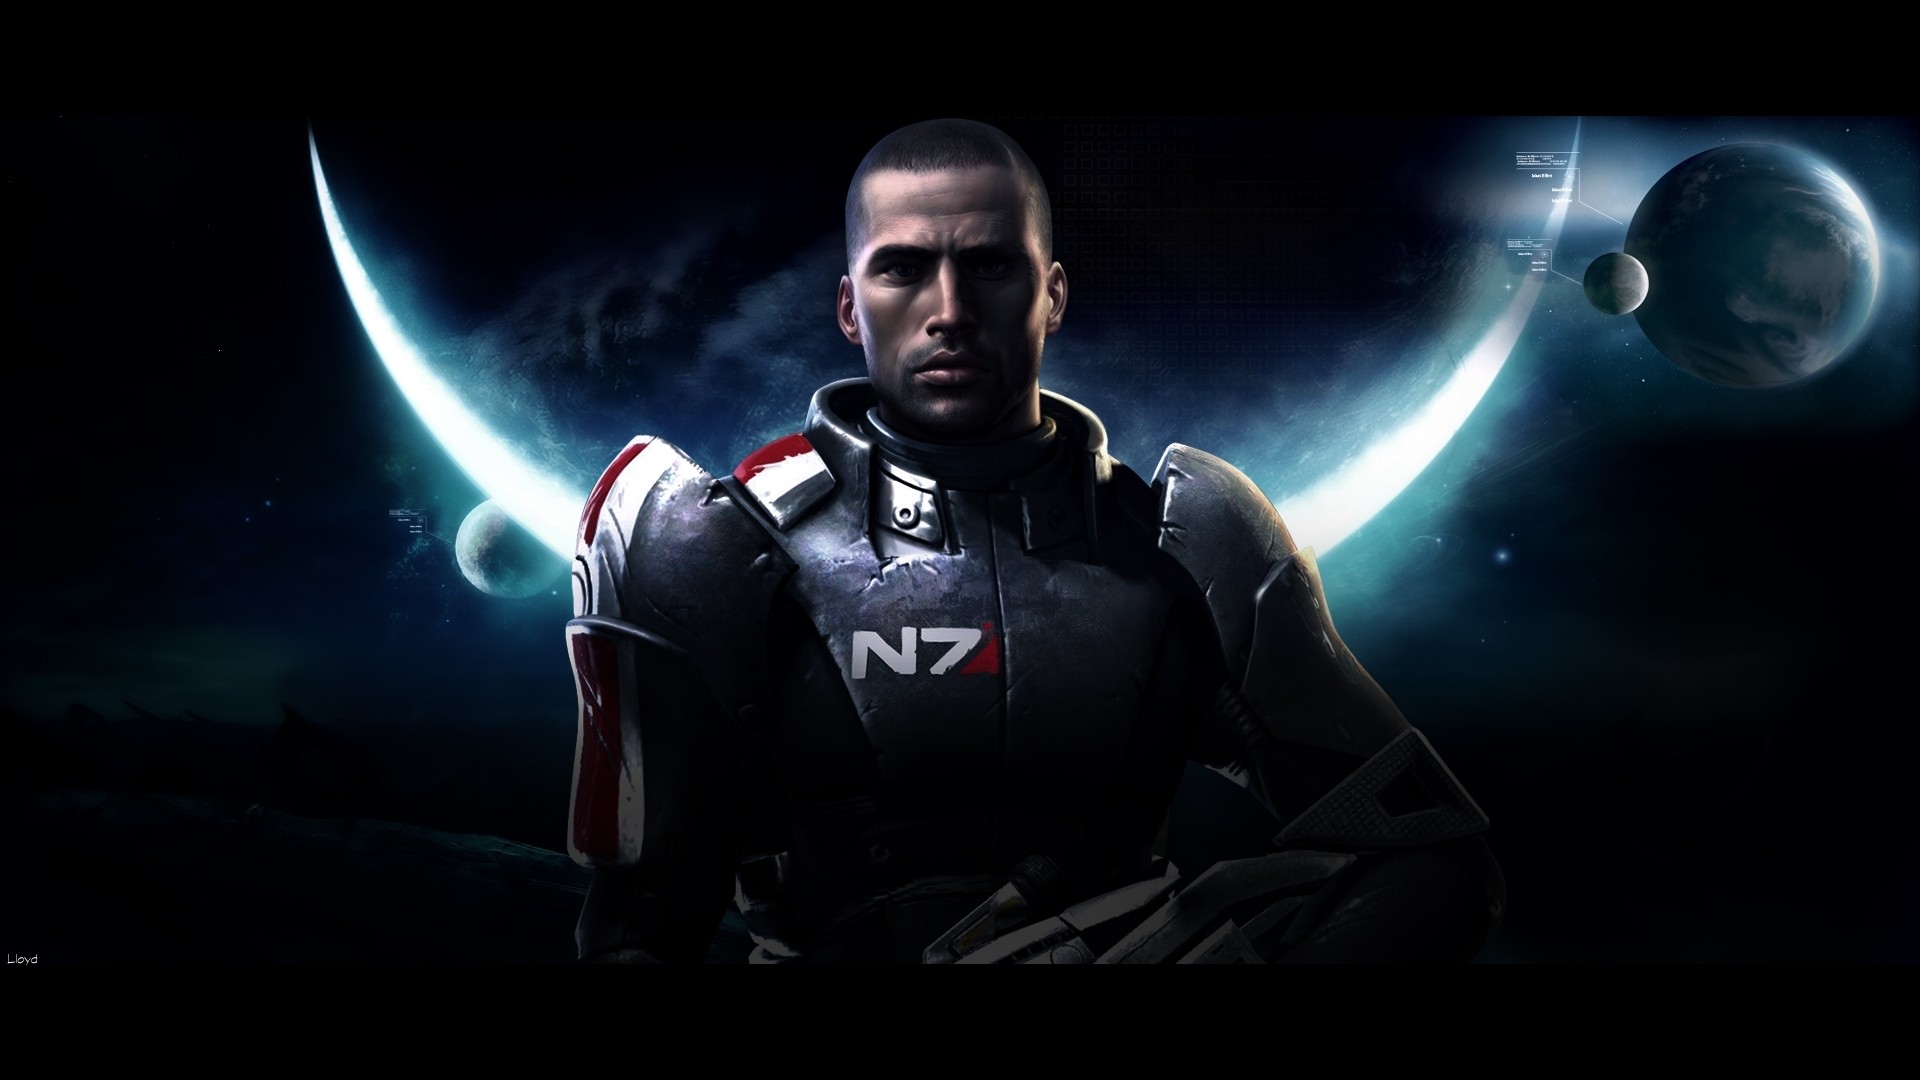 Wallpaper, video games, Mass Effect, superhero, Commander Shepard, screenshot, computer wallpaper, fictional character 1920x1080